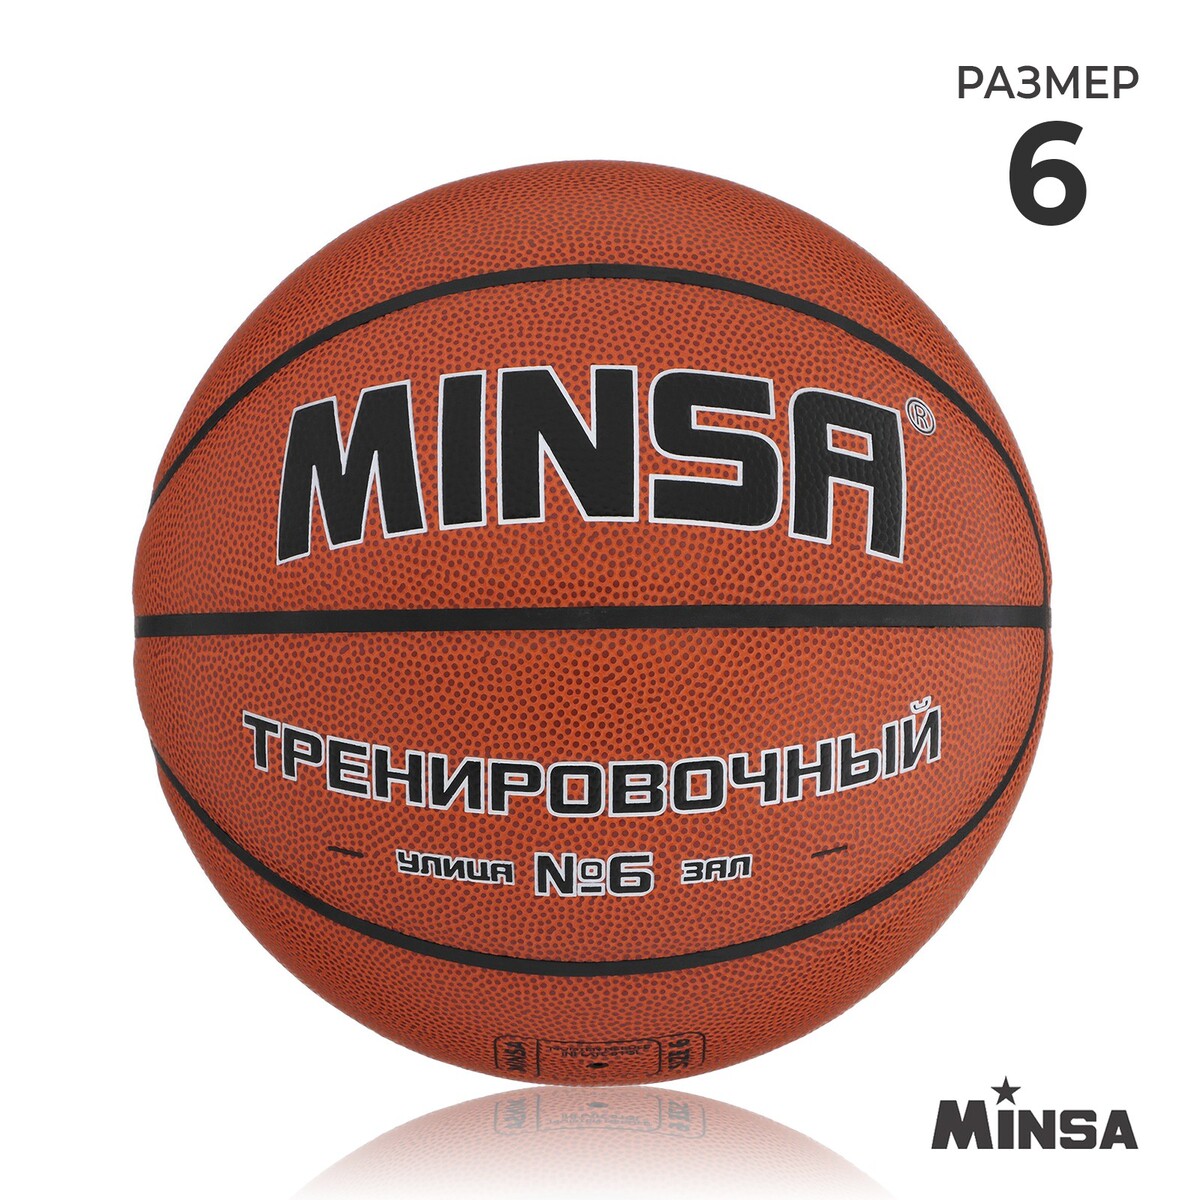 Баскетбольный мяч minsa, тренировочный, pu, клееный, 8 панелей, р. 6 мяч баскетбольный minsa пвх клееный 8 панелей р 5